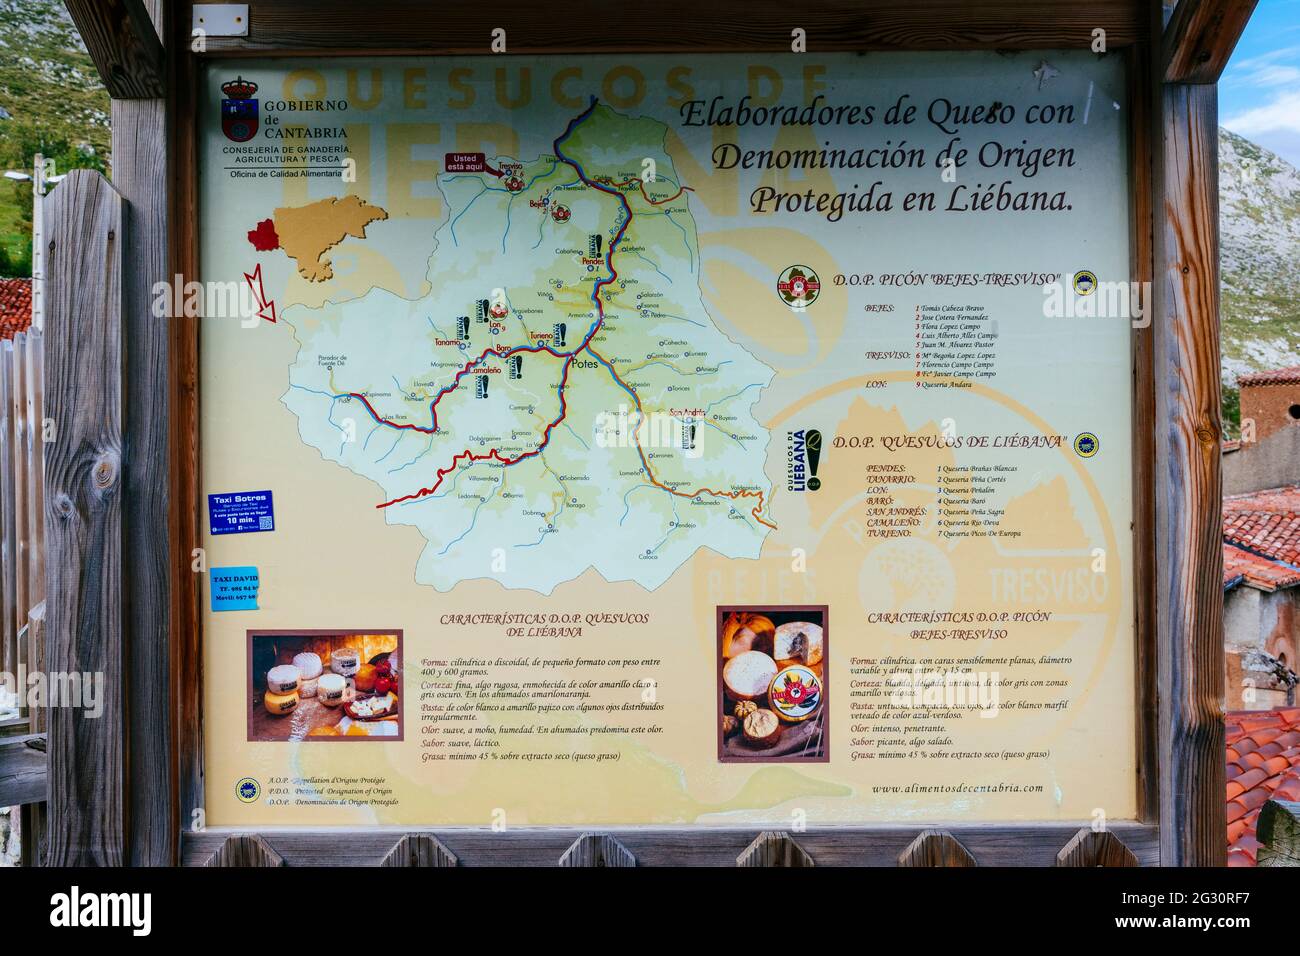 Panneau d'information. Informations sur la dénomination d'origine des fromages. Parc national Picos de Europa. Tresviso, Liébana, Cantabrie, Espagne, Europ Banque D'Images